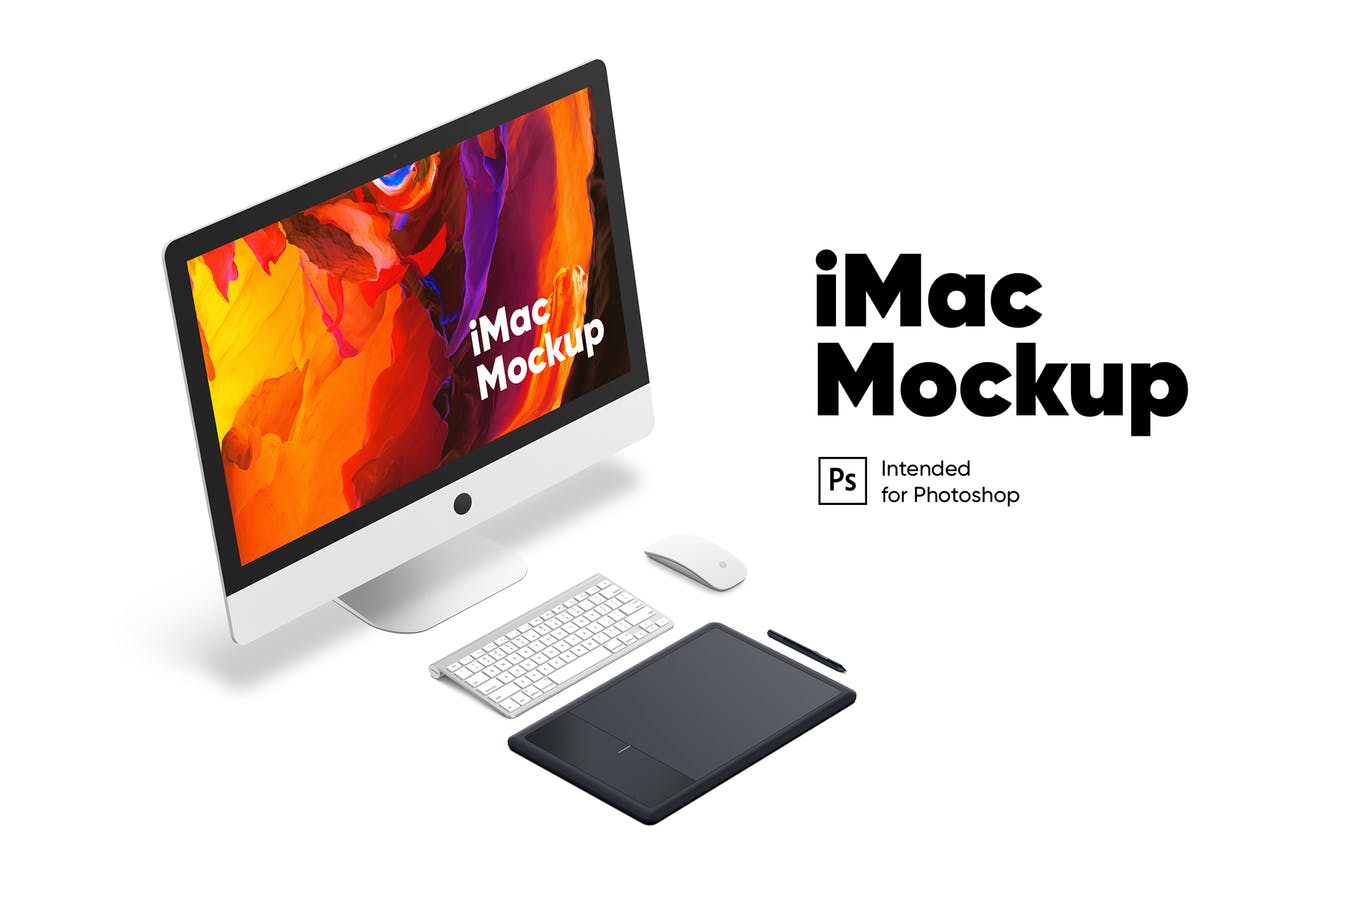 简约工作场景iMac一体机电脑设计演示第一素材精选样机模板 Workplace iMac mockup插图